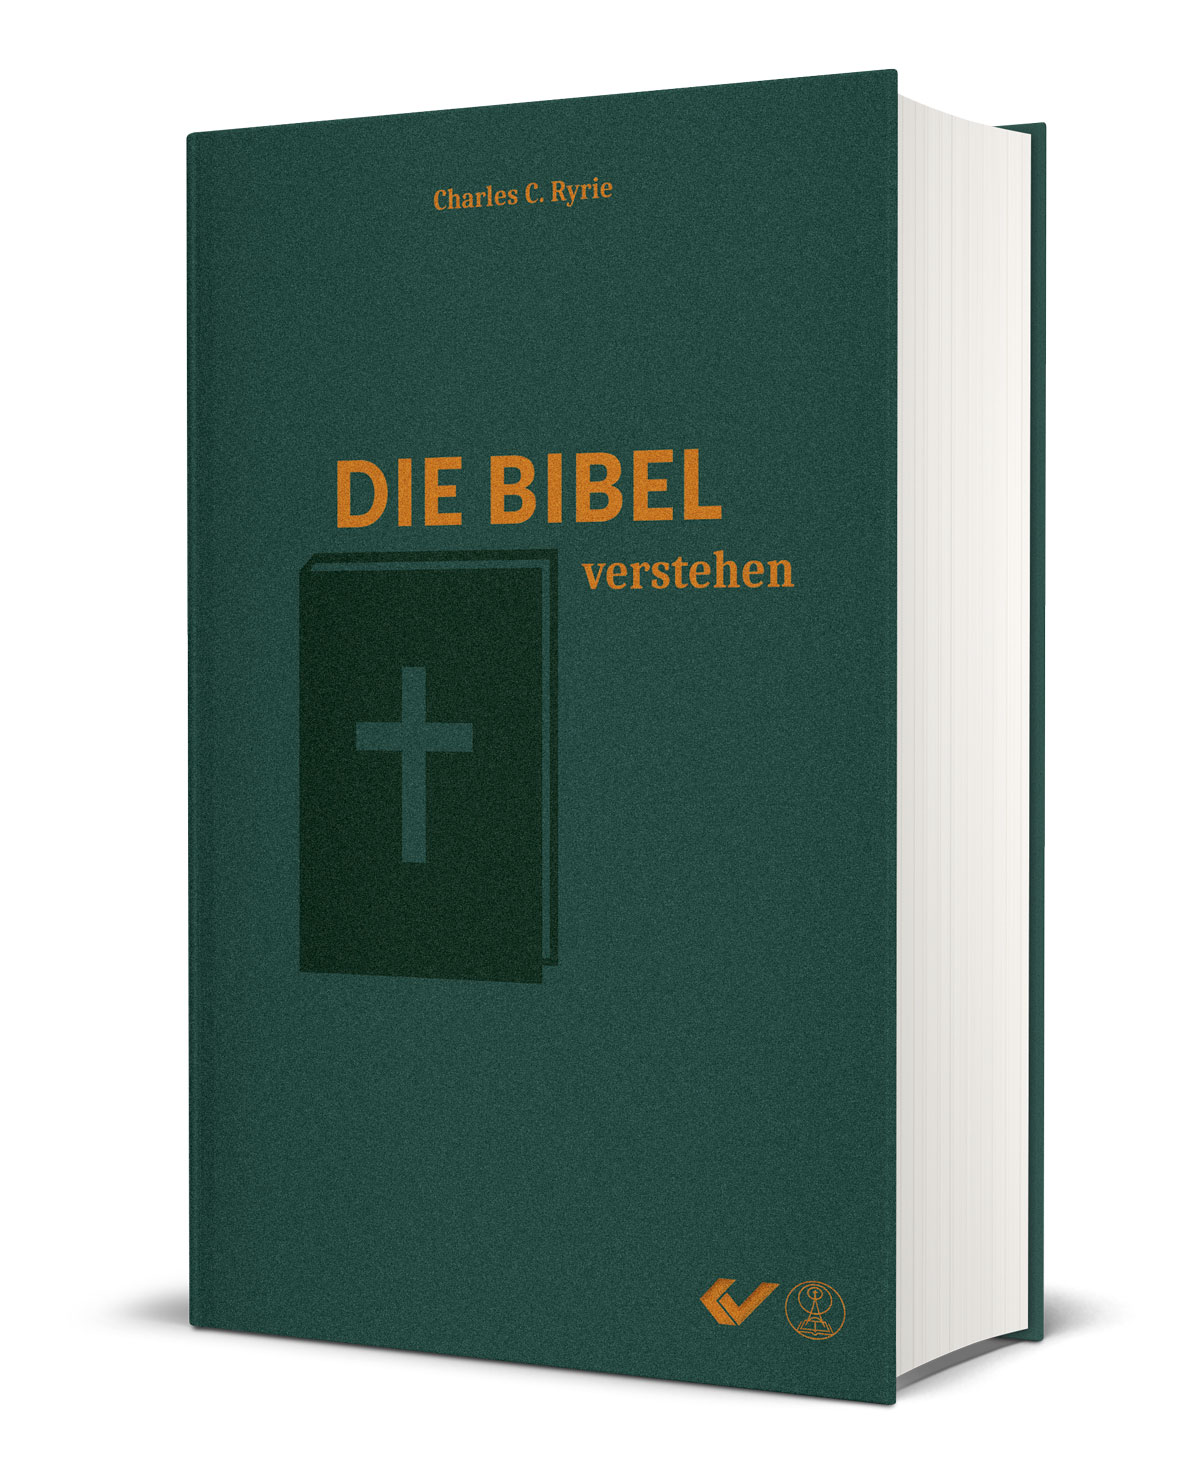 Charles C. Ryrie: Die Bibel verstehen - Das Handbuch systematischer Theologie für jedermann